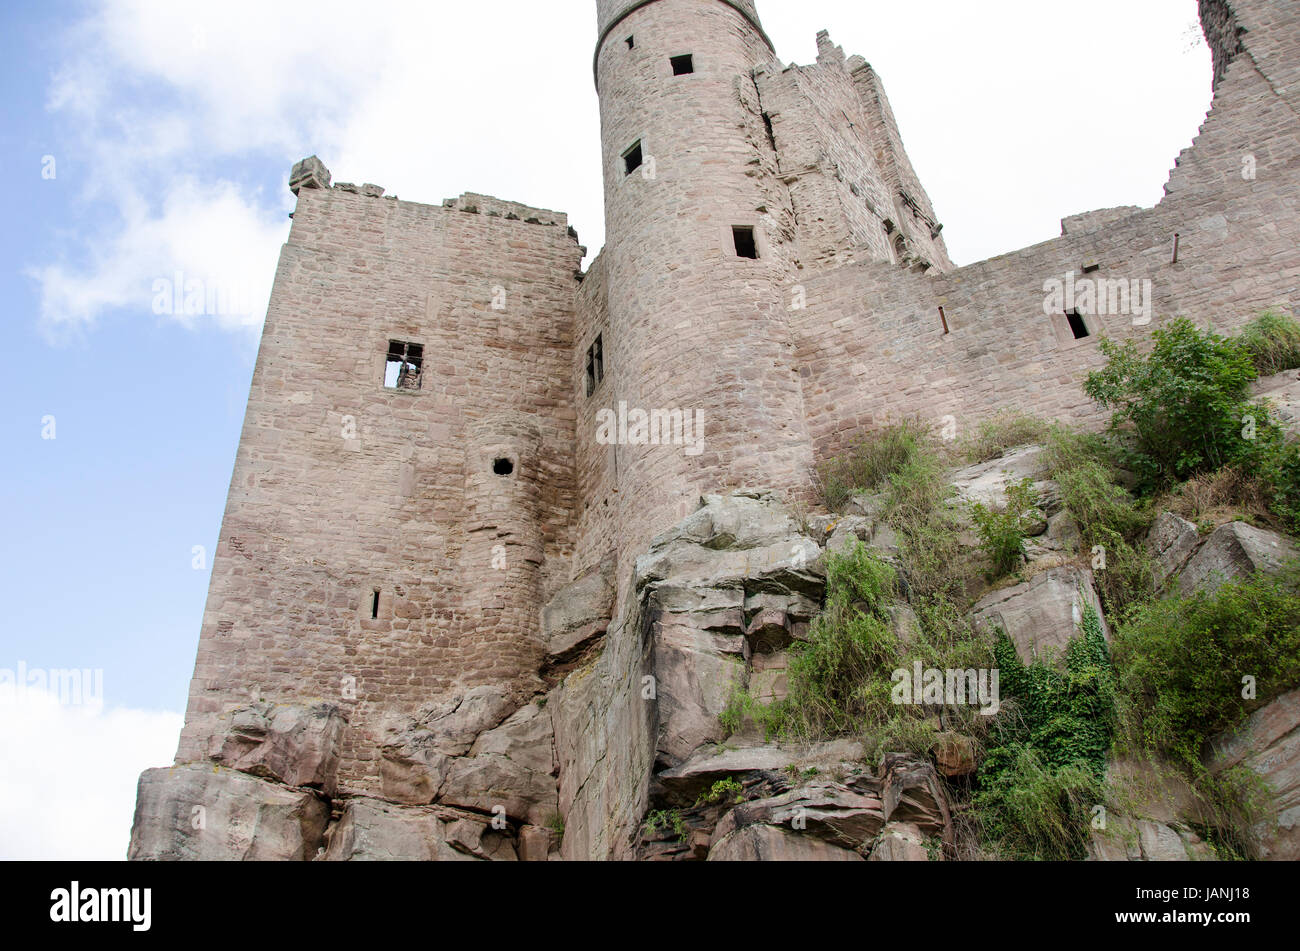 Die Burg Hanstein in Thüringen, eines der größten mittelalterlichen Burgruinen Deutschlands Stockfoto